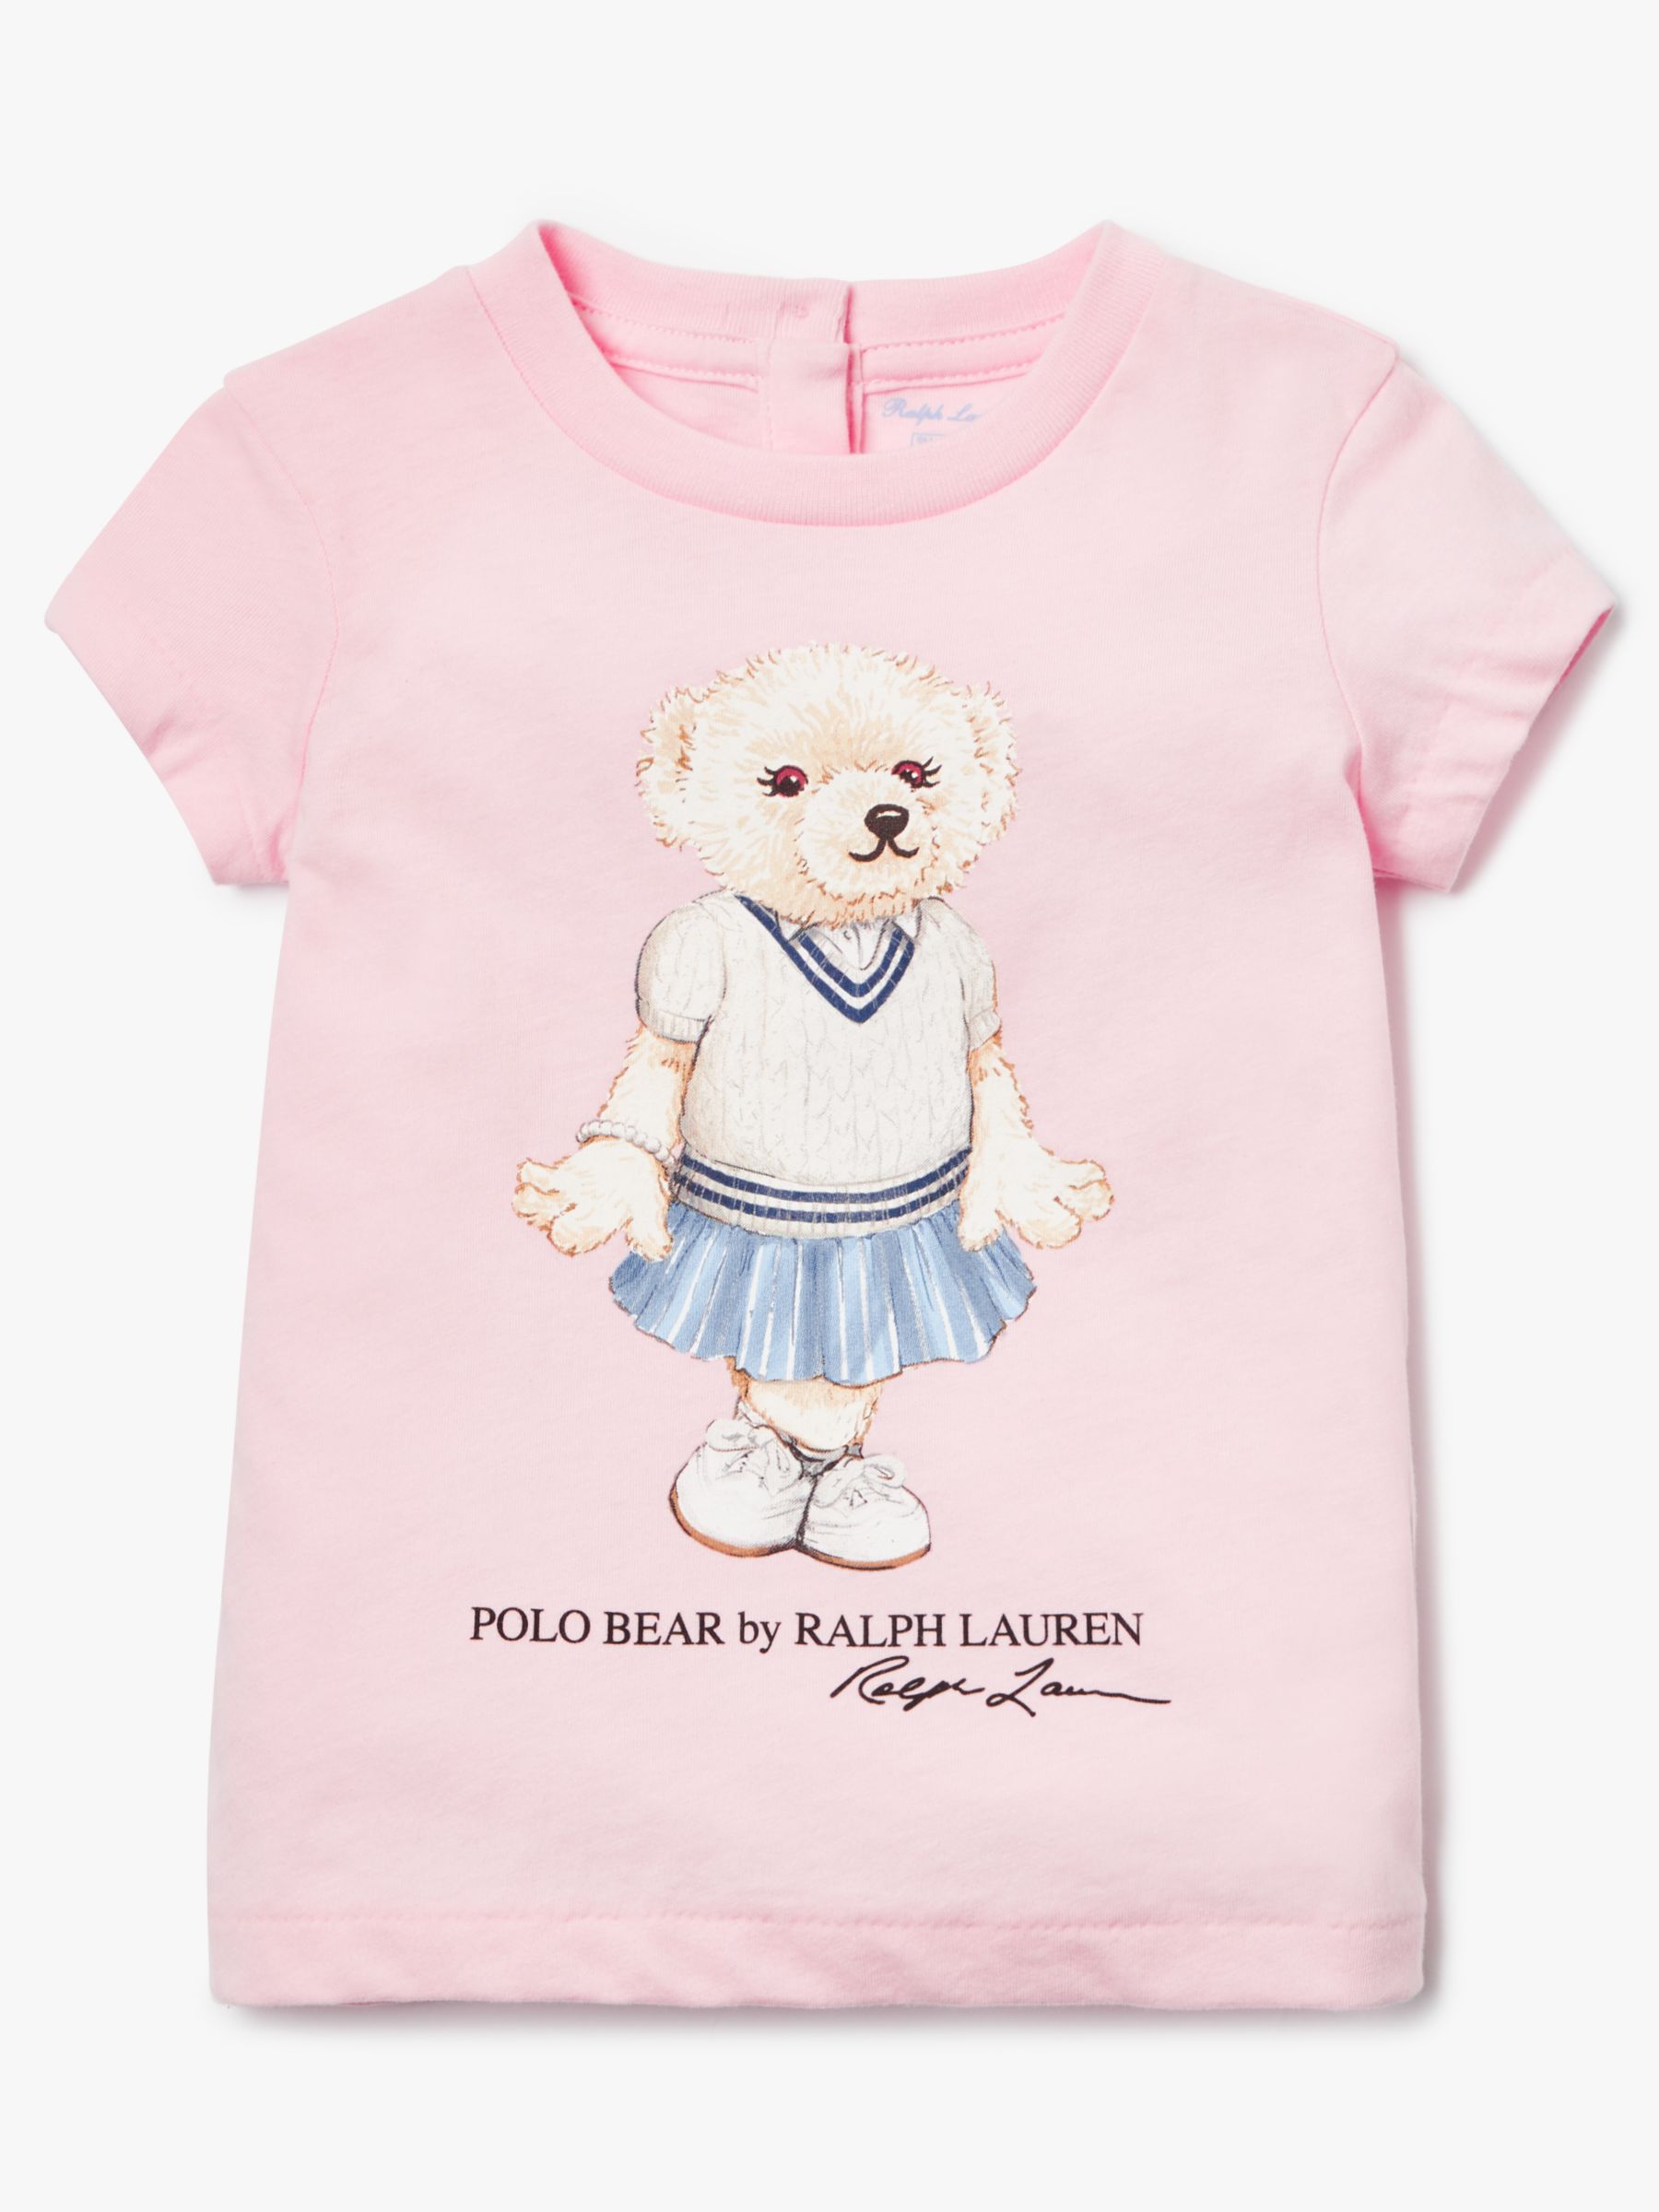 baby boy pink ralph lauren shirt